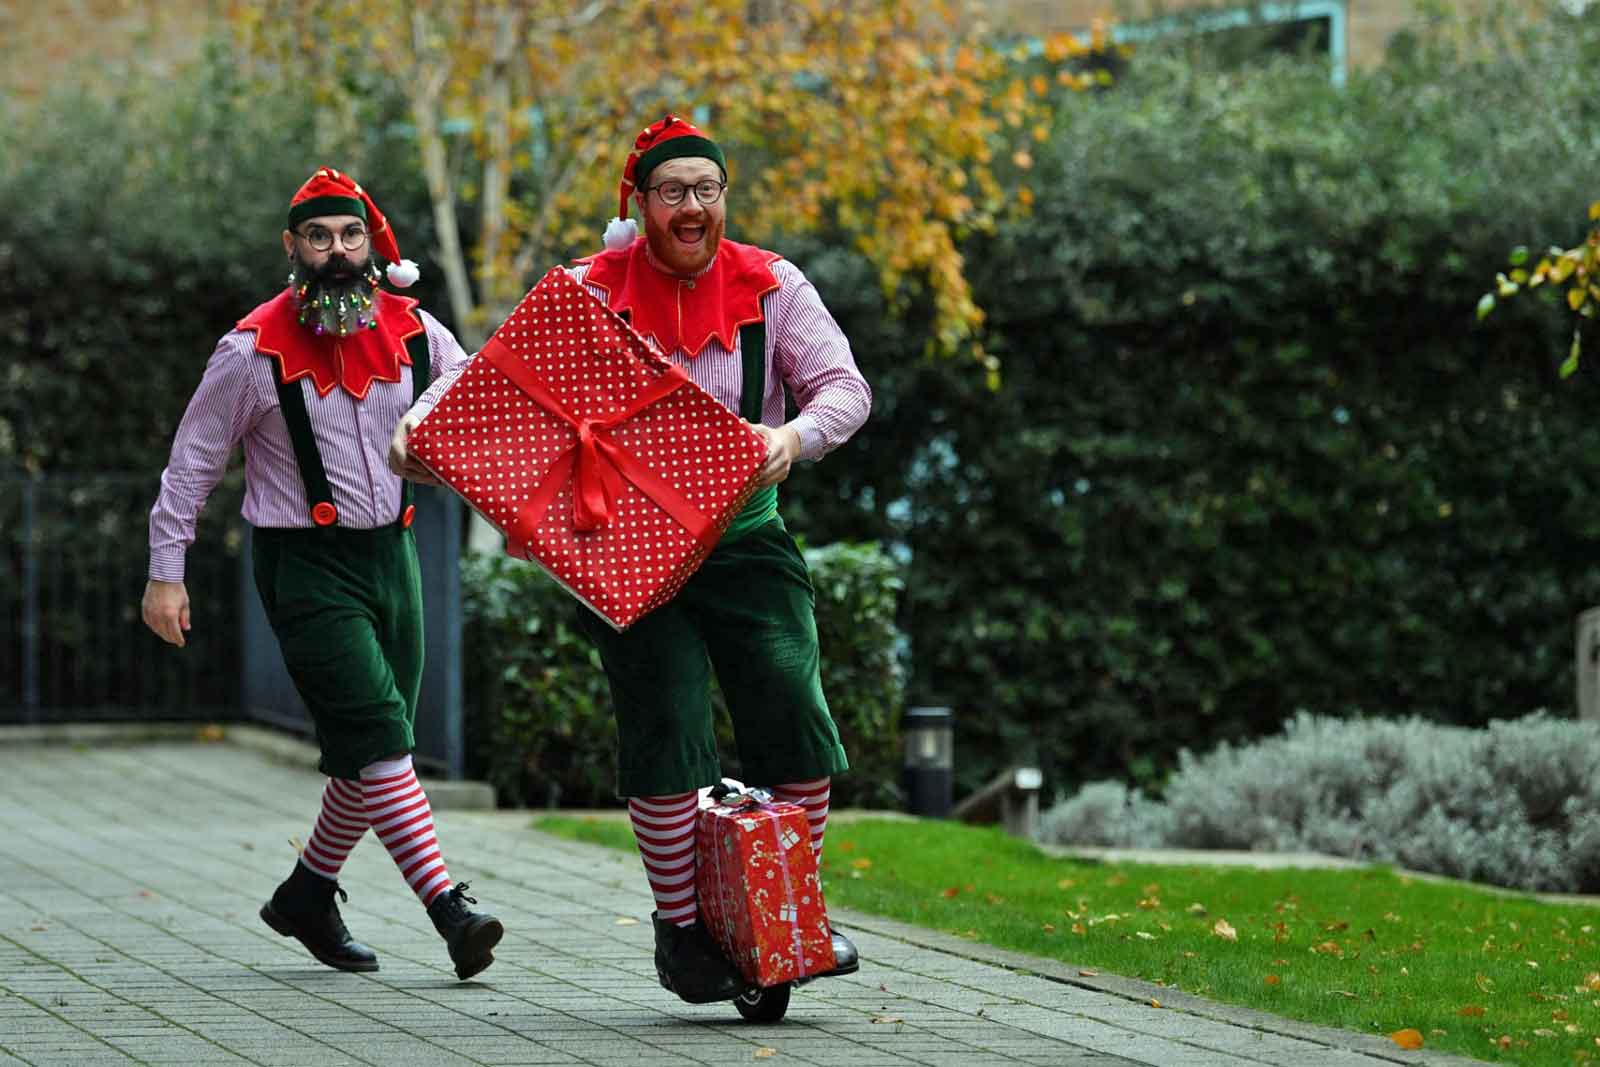 Die Elfen des Weihnachtsmanns treten am 30. November 2021 vor dem Ministry of Fun in London auf, während sich die Weihnachtsmänner in der Santa School versammeln, einer Reihe von Schulungskursen für professionelle britische Weihnachtsmänner. Letztes Jahr war das erste in über 20 Jahren Santa School, in dem sich die Weihnachtsmänner nicht traditionell versammeln konnten. (Foto von JUSTIN TALLIS / AFP)